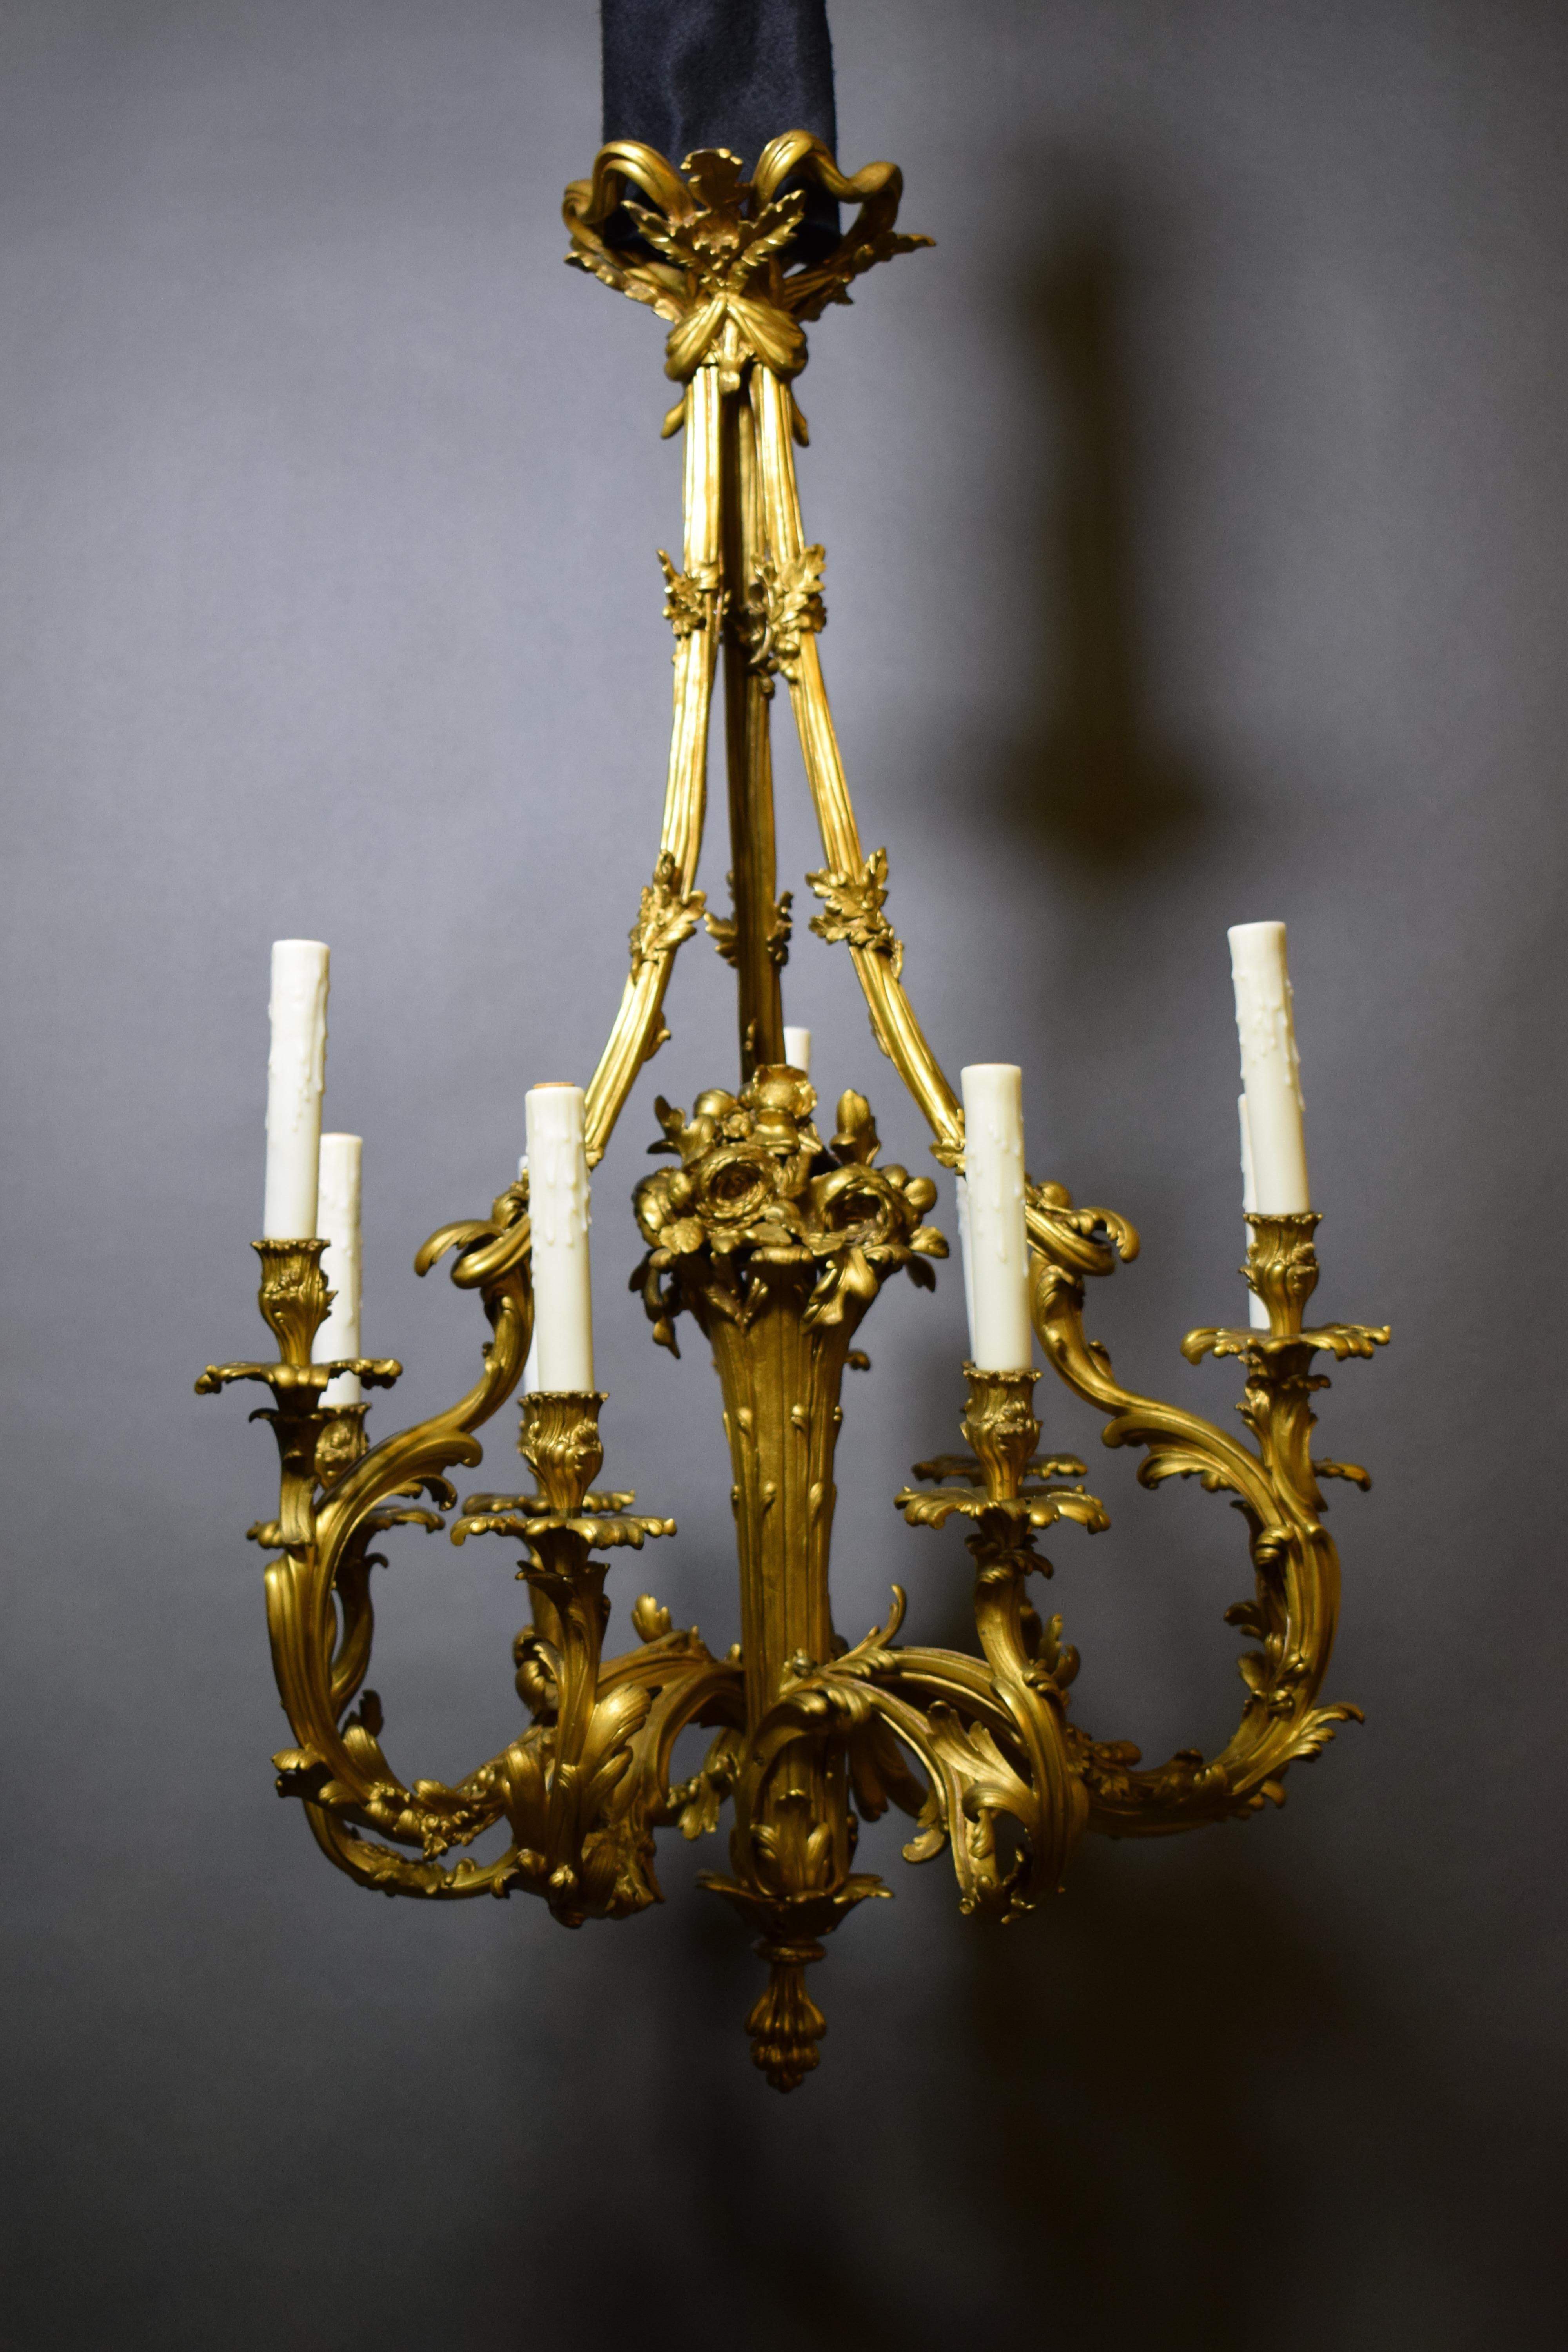 Kronleuchter im Stil Louis XV aus vergoldeter Bronze. In der Mitte ein stilisierter Blumenkorb. 9 Lichter. Frankreich, um 1900.
CW5185